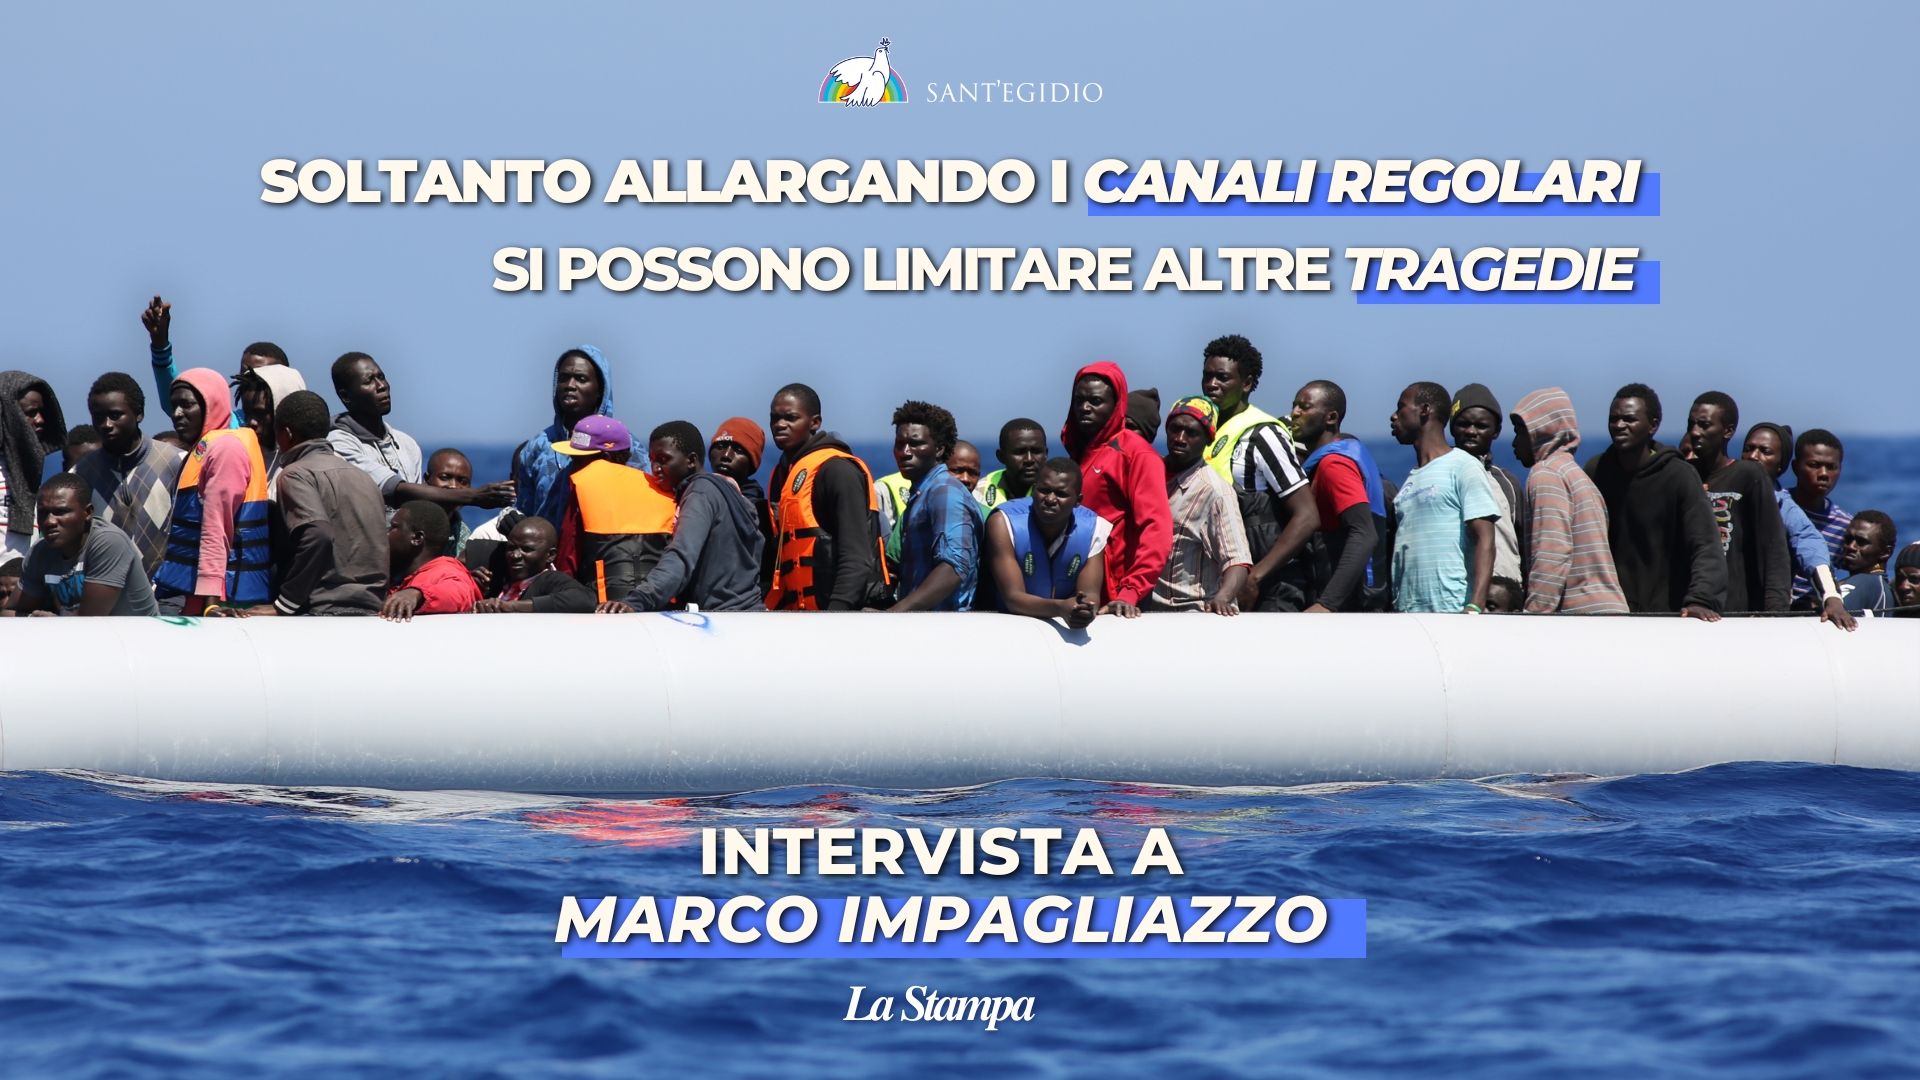 Intervista de "La Stampa" a Marco Impagliazzo, presidente di Sant'Egidio: "Servono canali di ingresso regolari. L'Italia diventi un porto sicuro europeo, i centri in Albania non sono la soluzione"